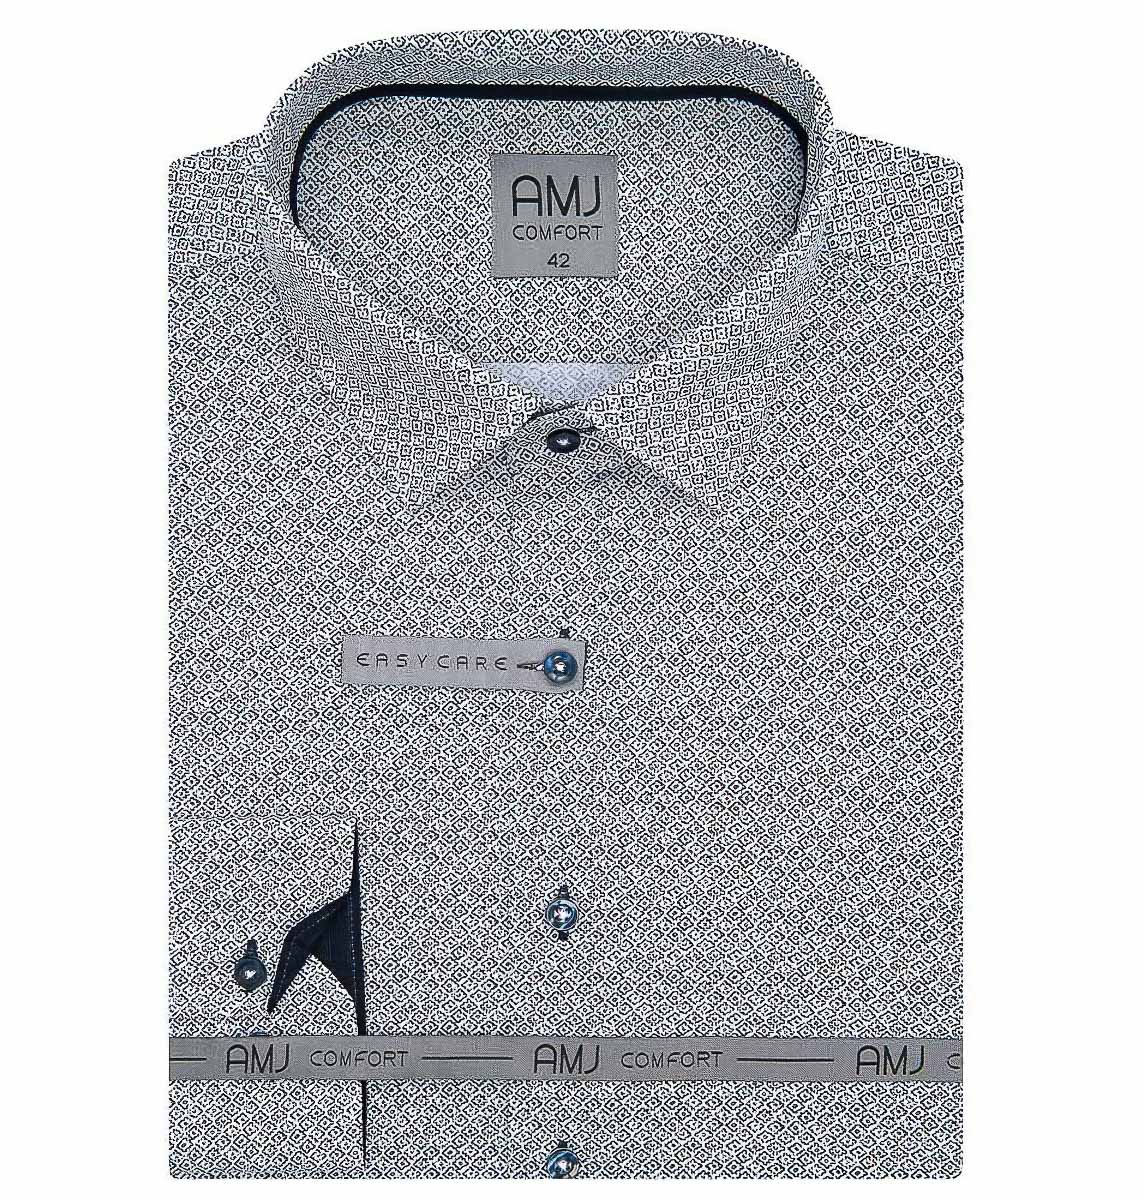 Pánská košile AMJ bavlněná, šedobílá károvaná VDBR1114, dlouhý rukáv (základní + prodloužená délka)